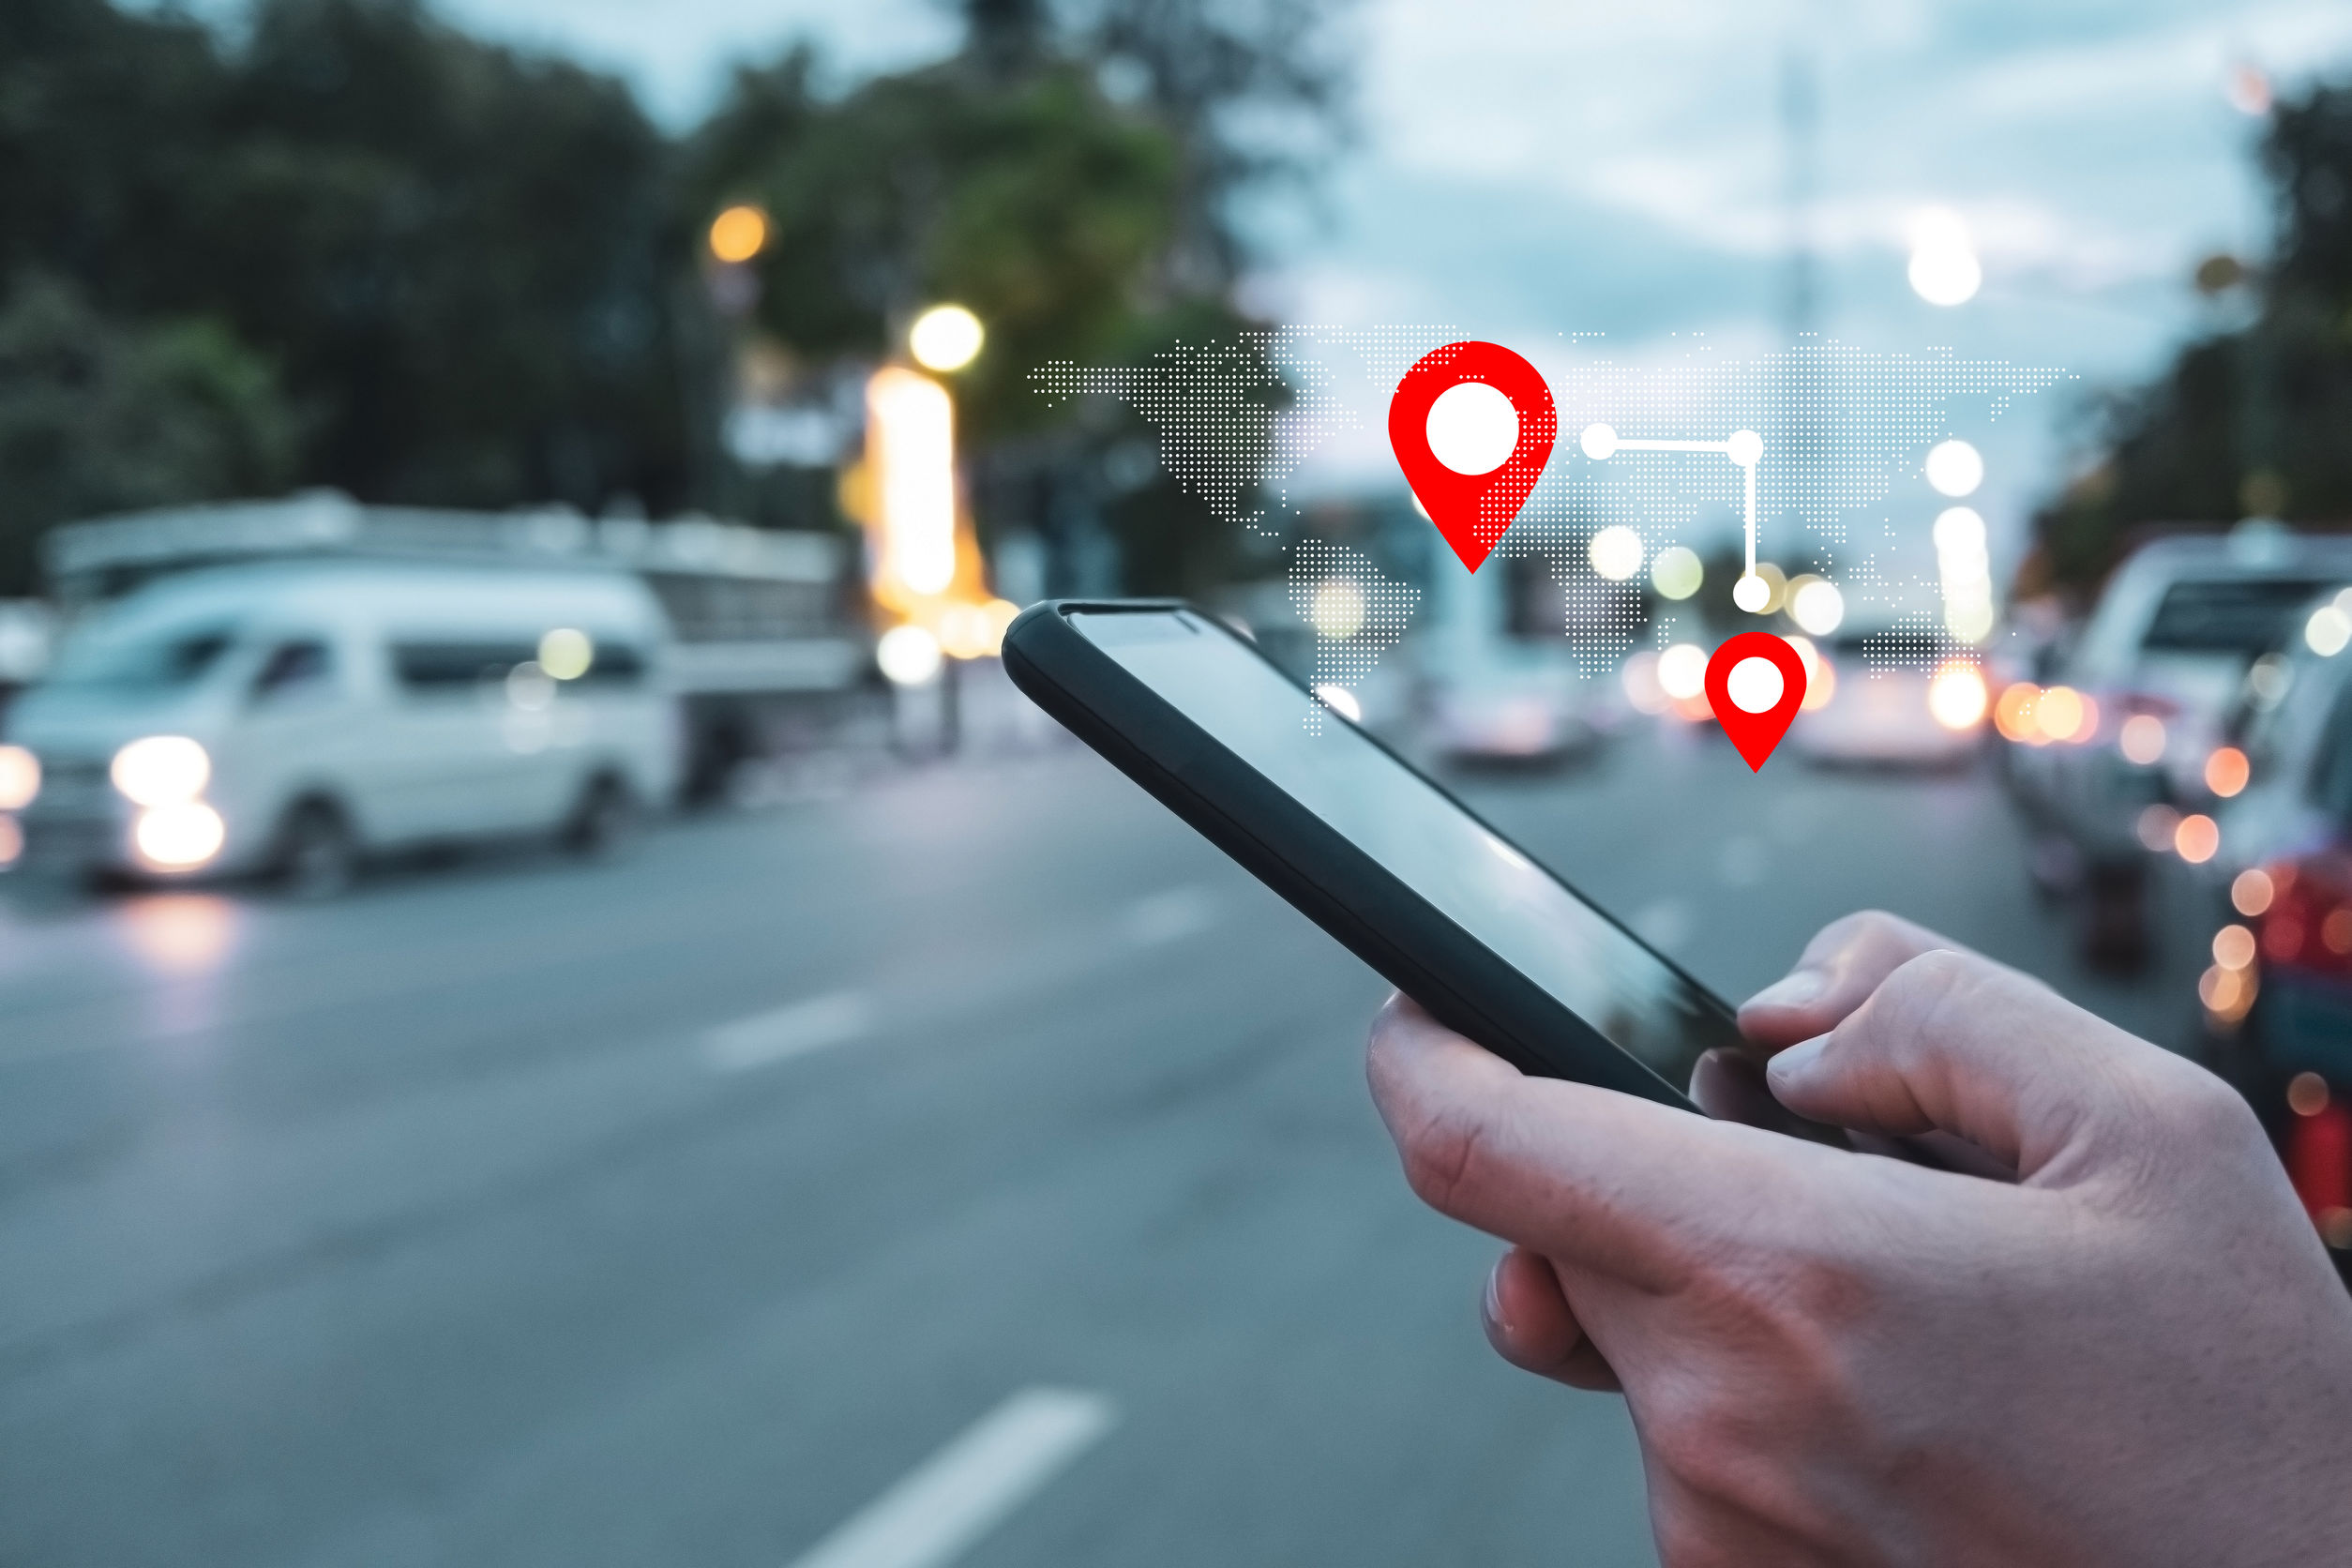 Mejores localizadores GPS para auto: cuáles son, comparativa y precio [2021] - Bidcom News